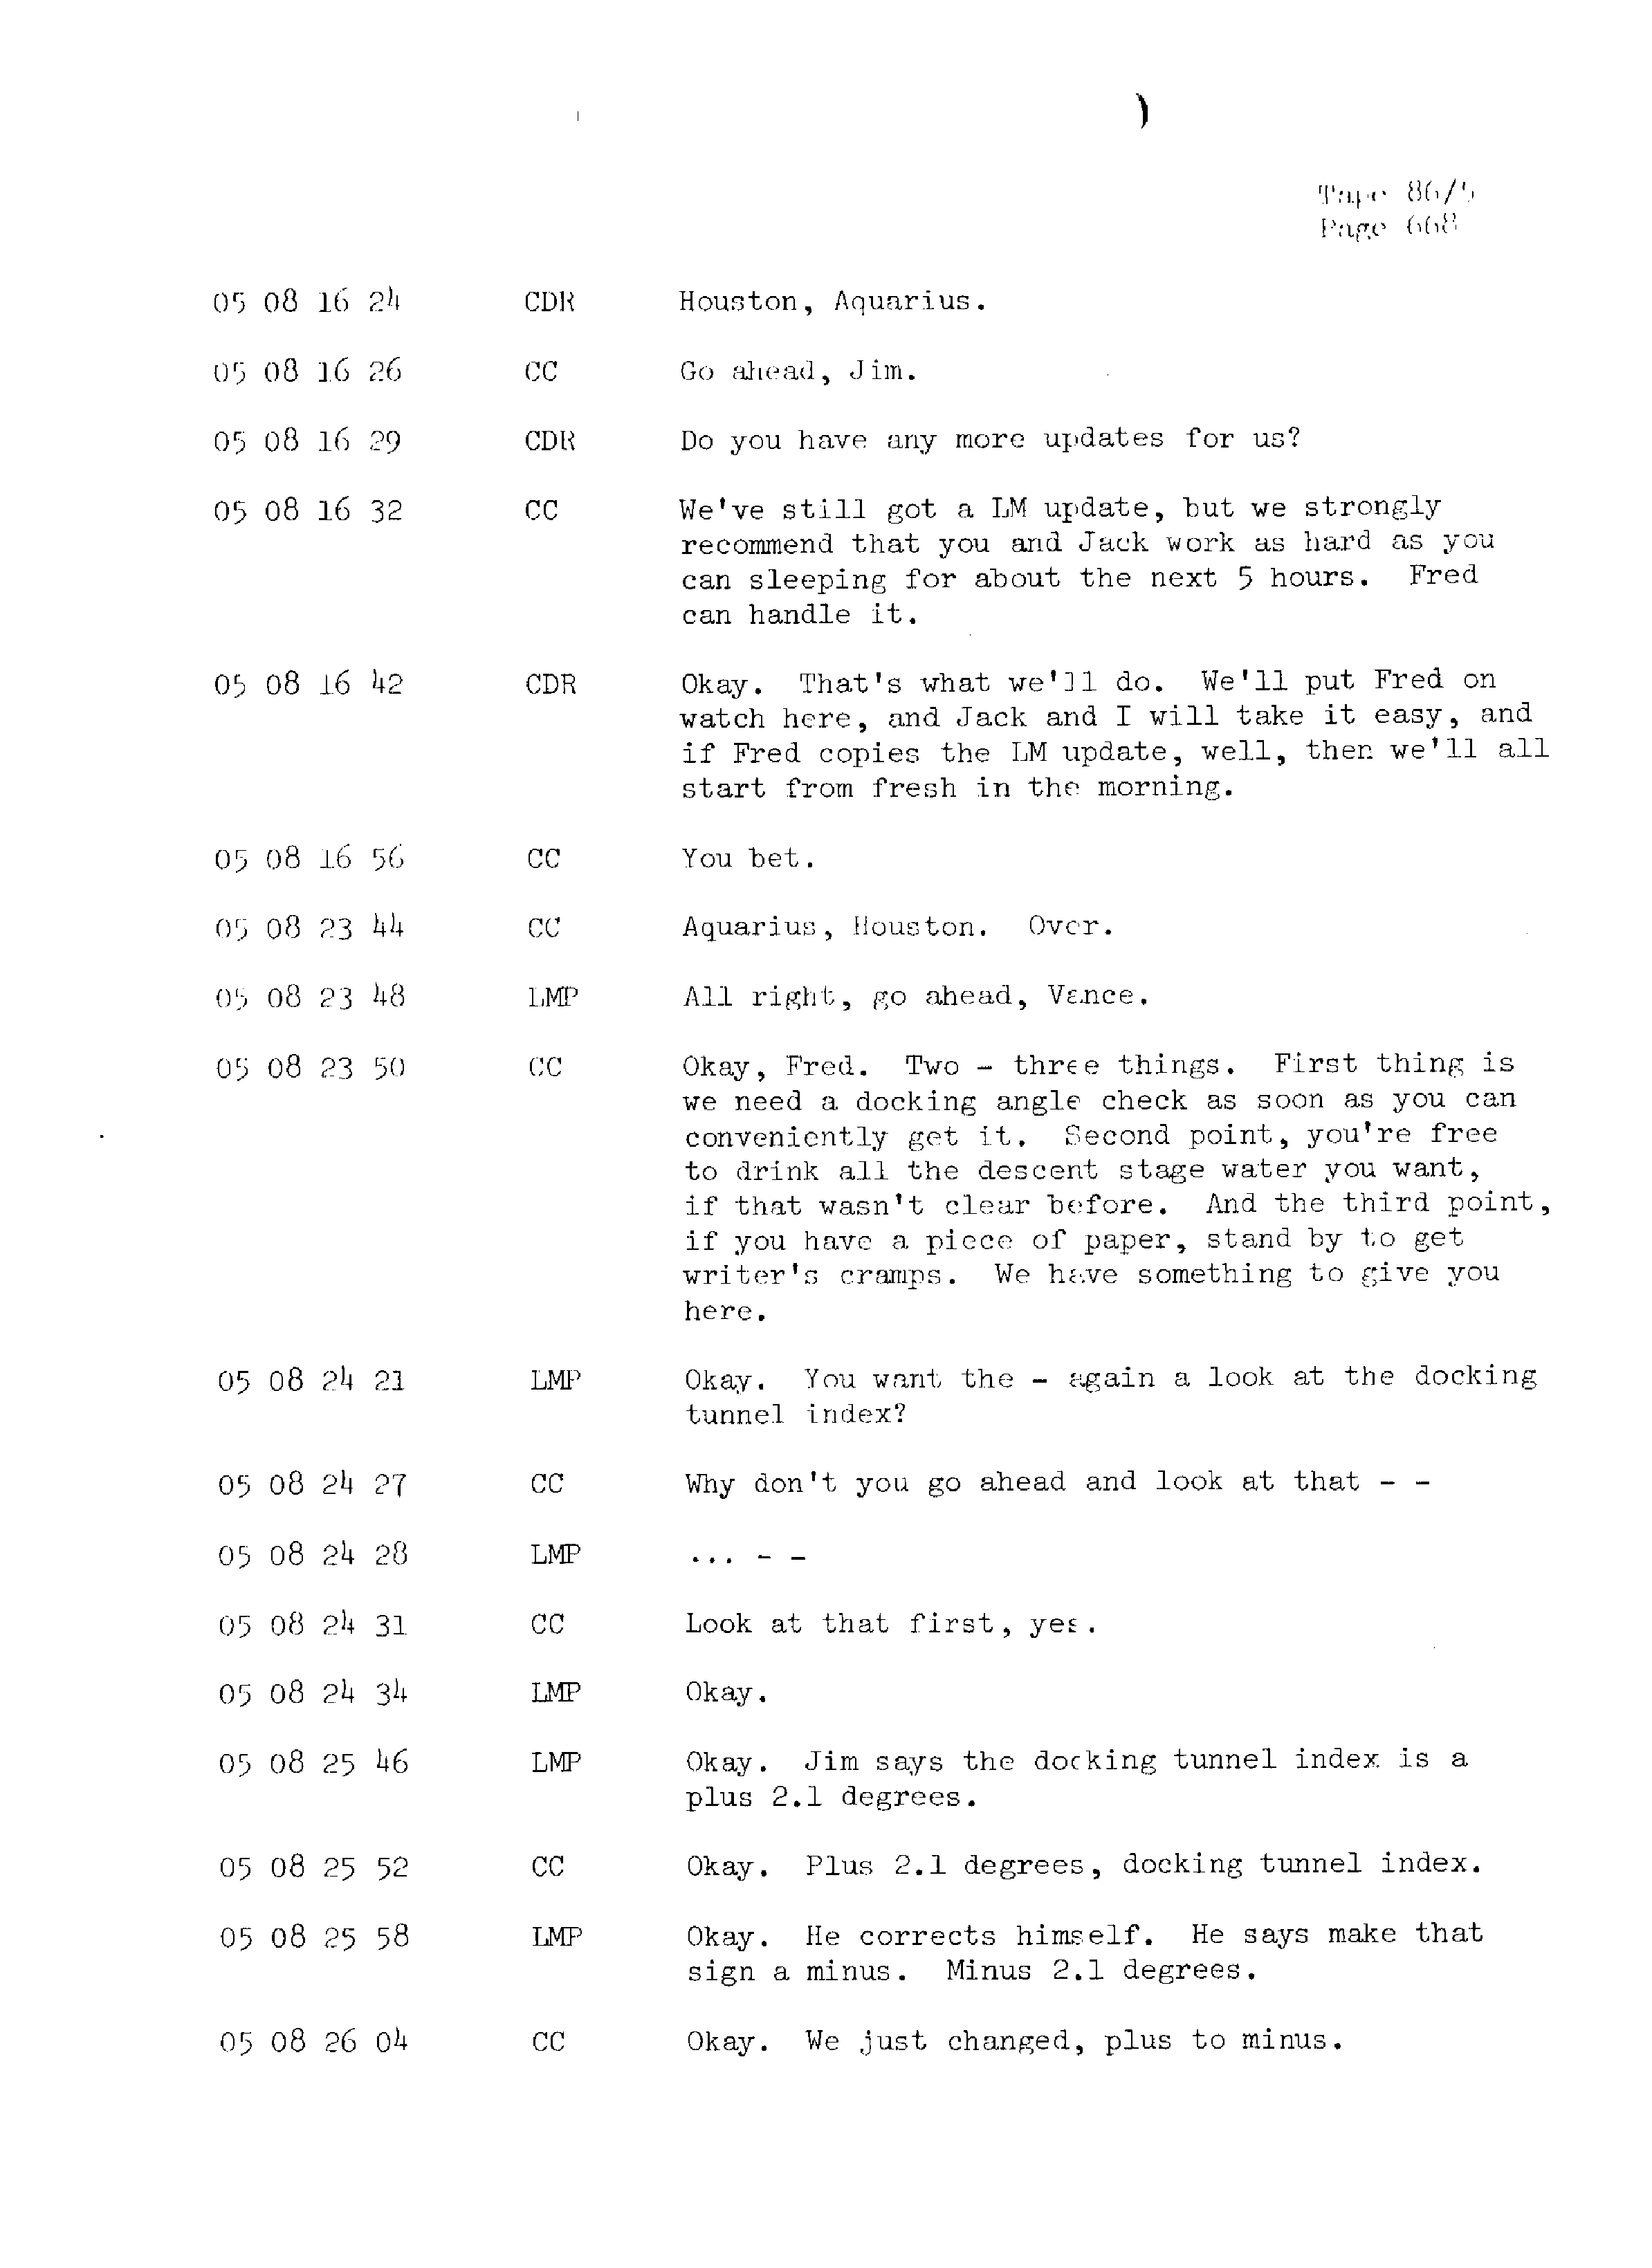 Page 675 of Apollo 13’s original transcript